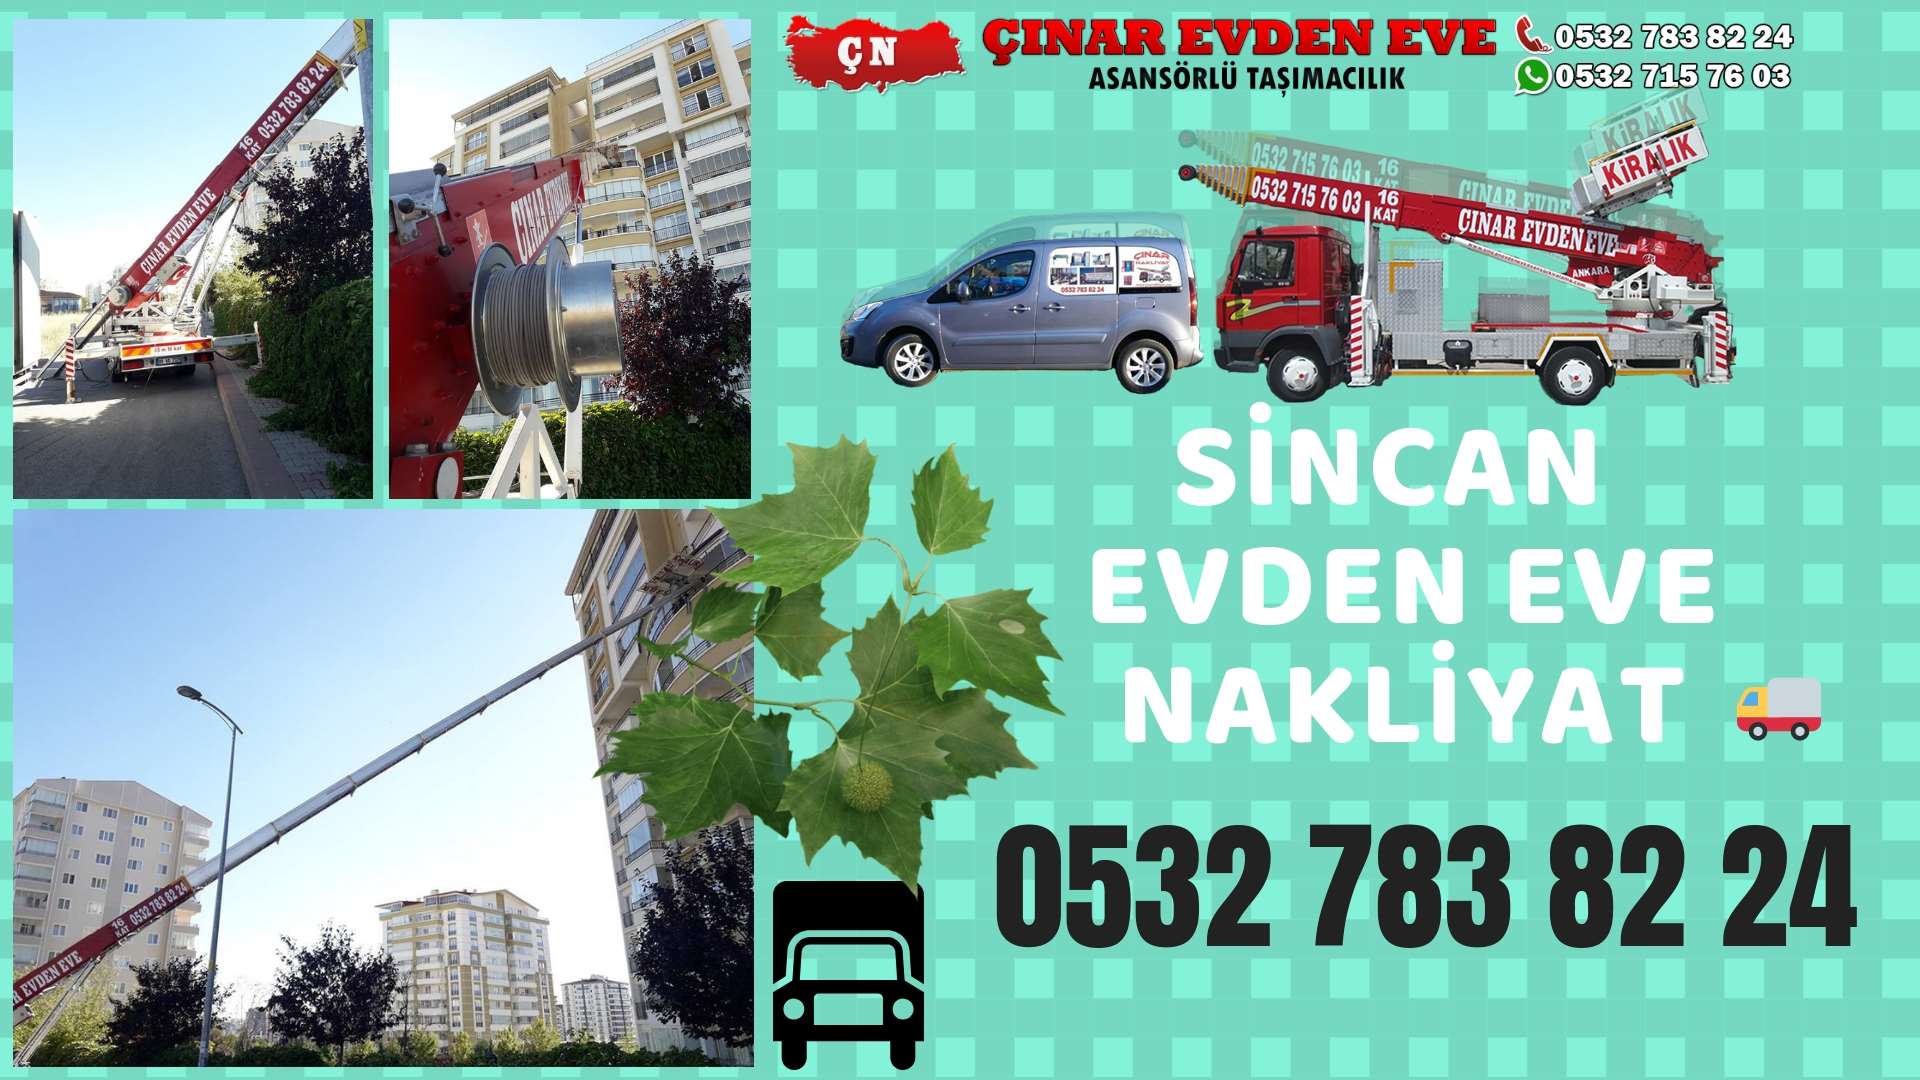 Ankara Kazan sincan ev eşya taşımacılığı, sincan evden eve 0532 715 76 03